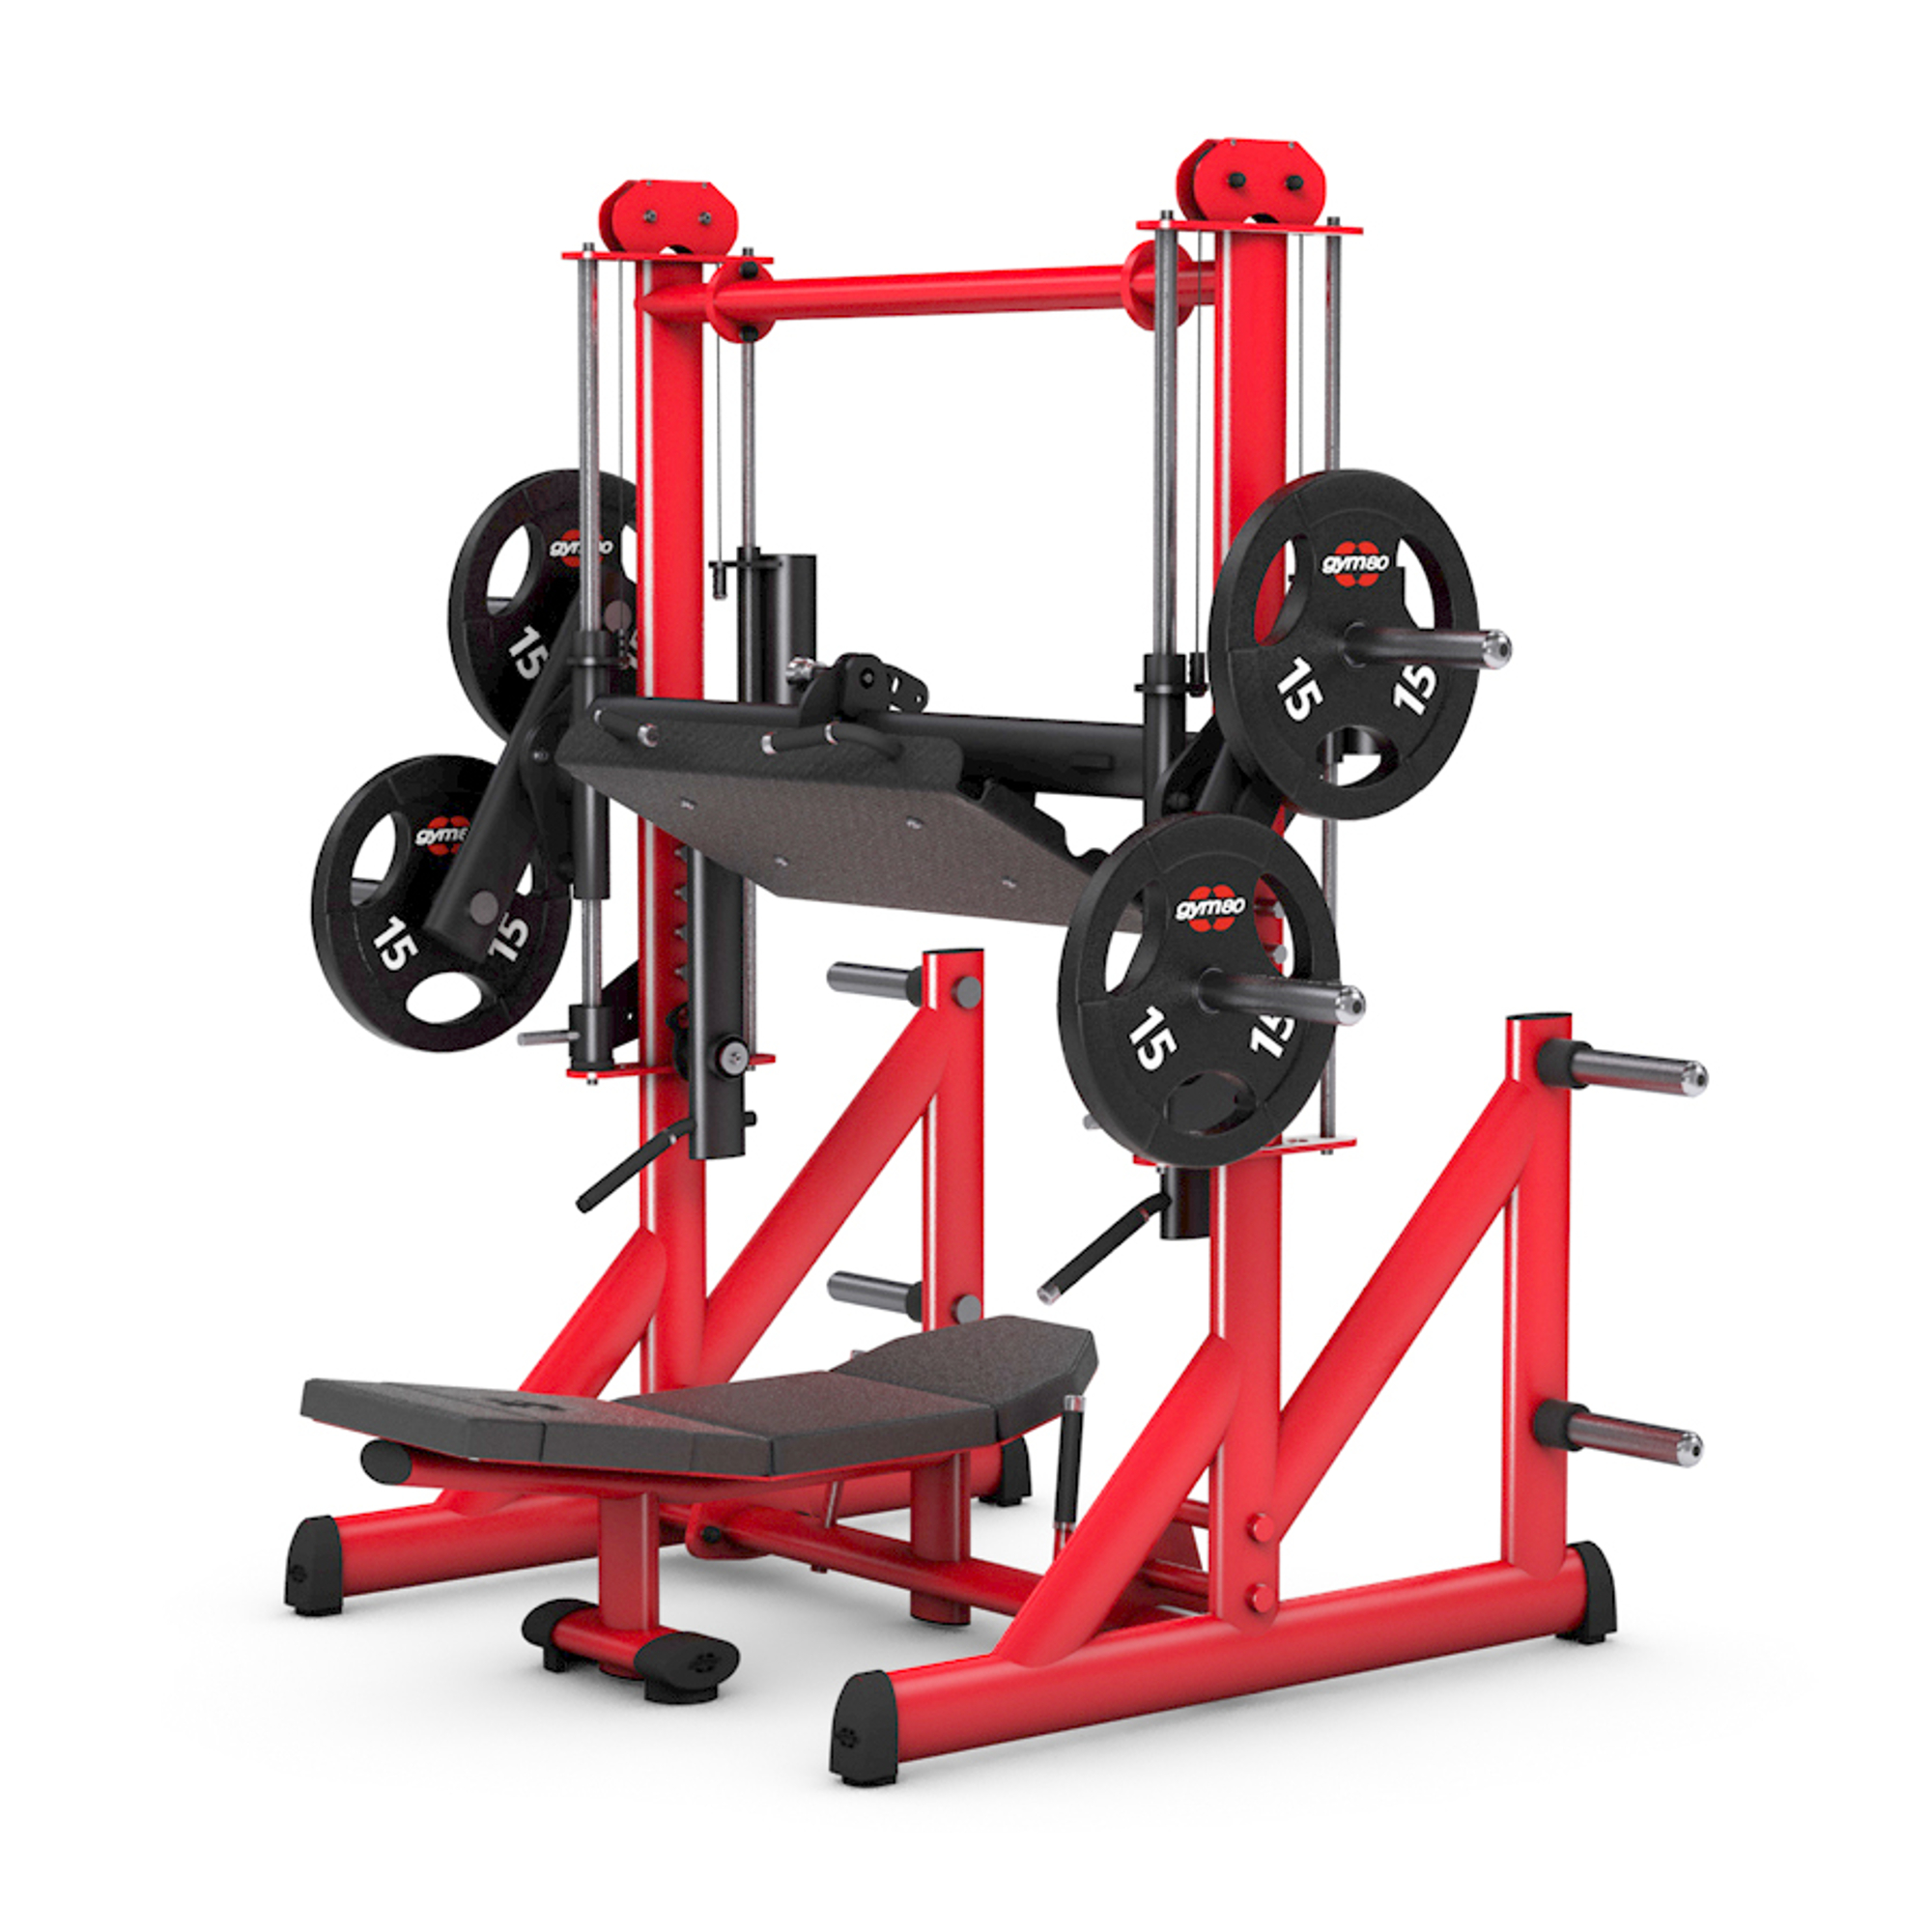 Brug gym80 Pure Kraft Vertical Leg Press til en forbedret oplevelse